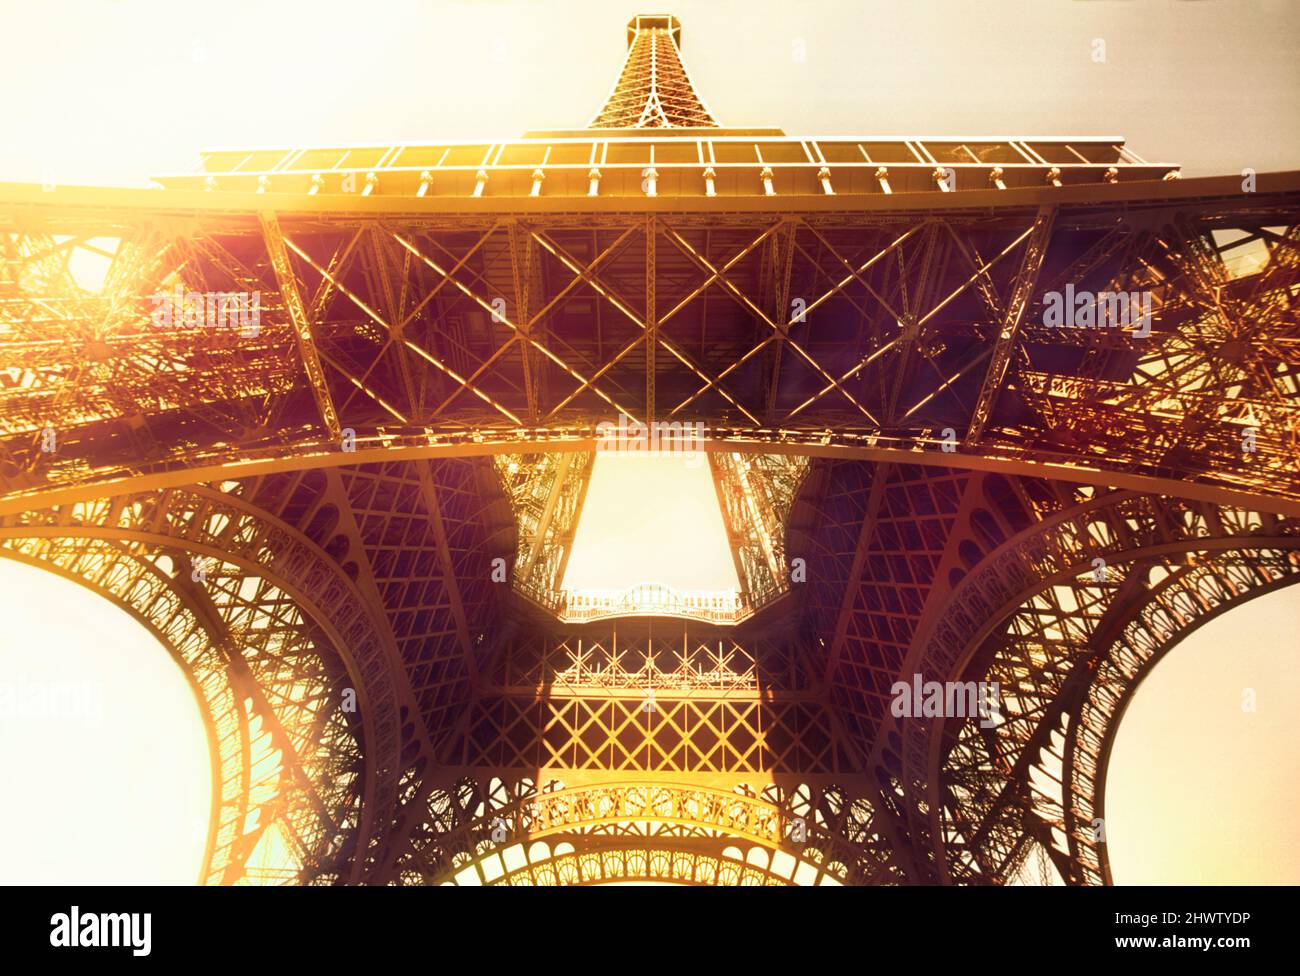 Torre Eiffel di Parigi. Ammira il monumento storico simbolo con il bagliore del sole all'alba. Architettura Belle Epoque Francia Foto Stock